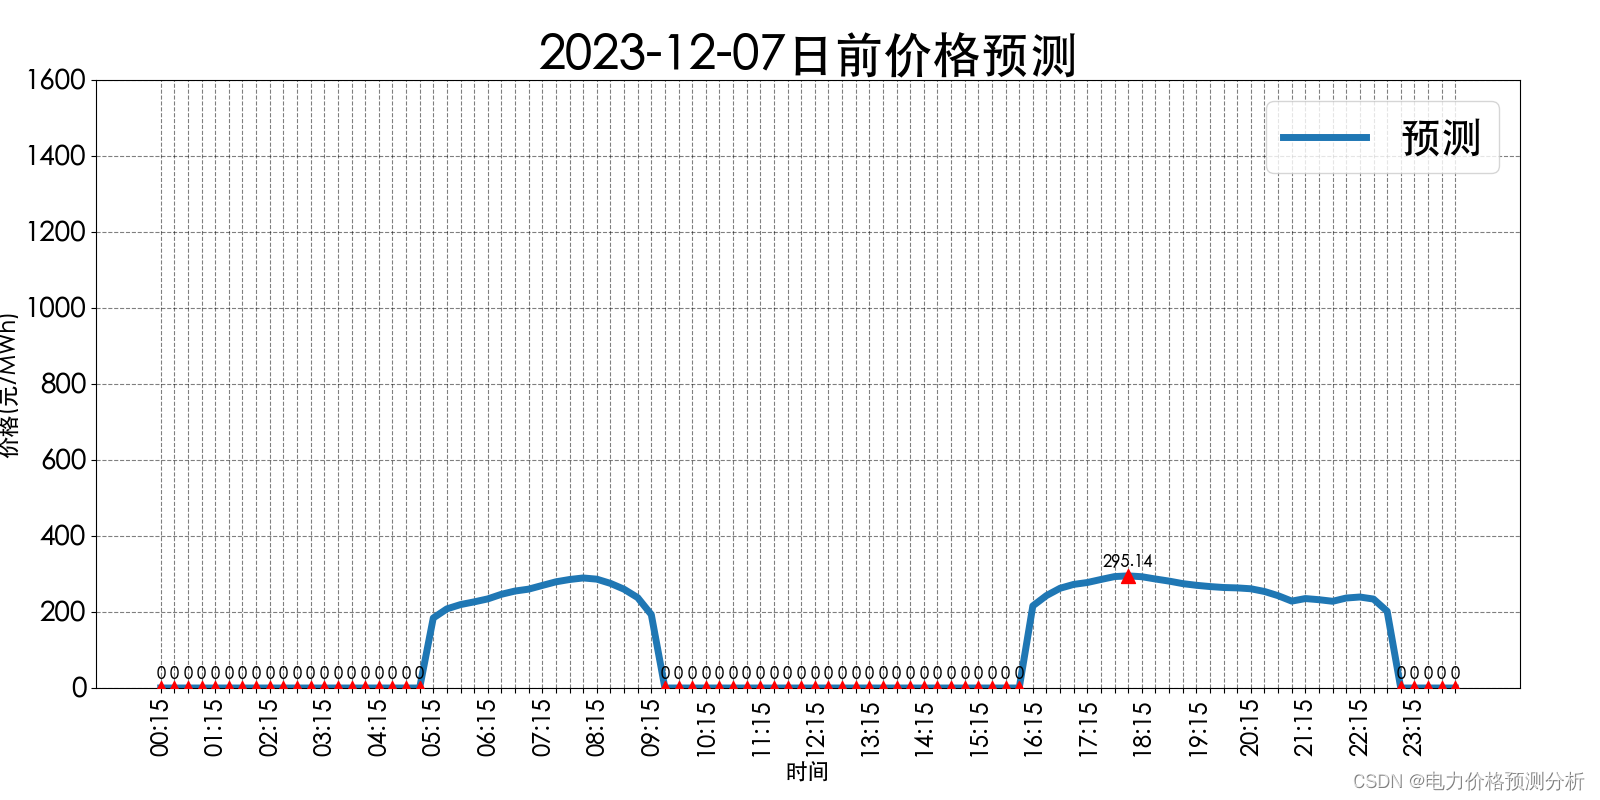 山西电力市场日前价格预测【2023-12-07】